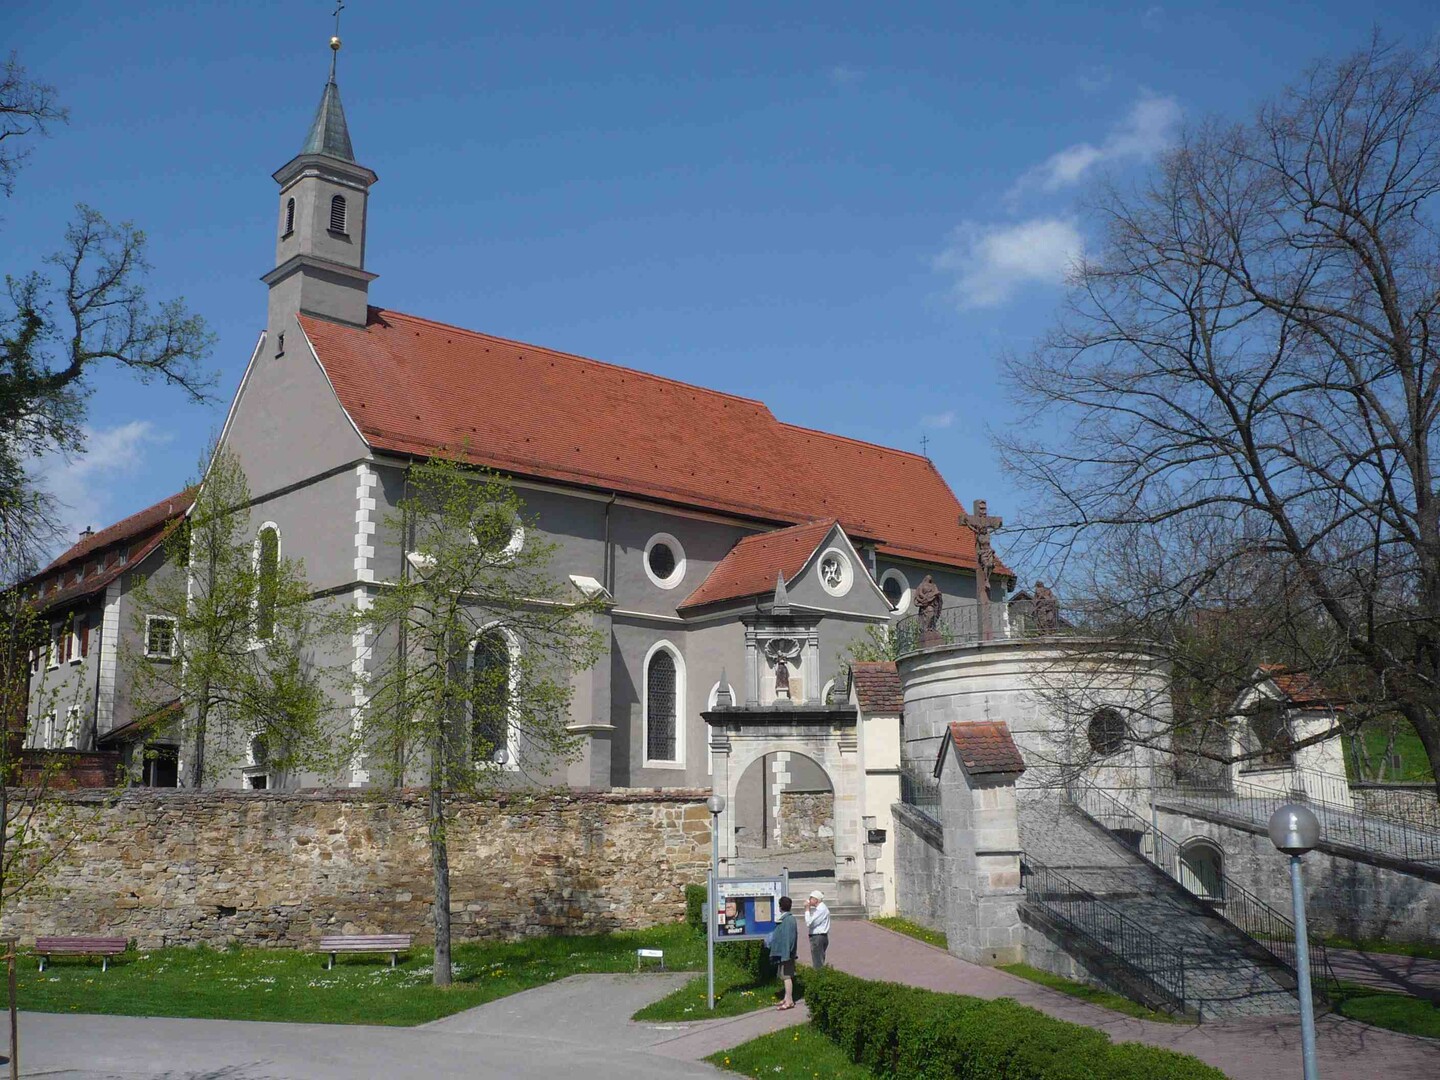 Hechingen Kirche St. Luzen am Wegrand.